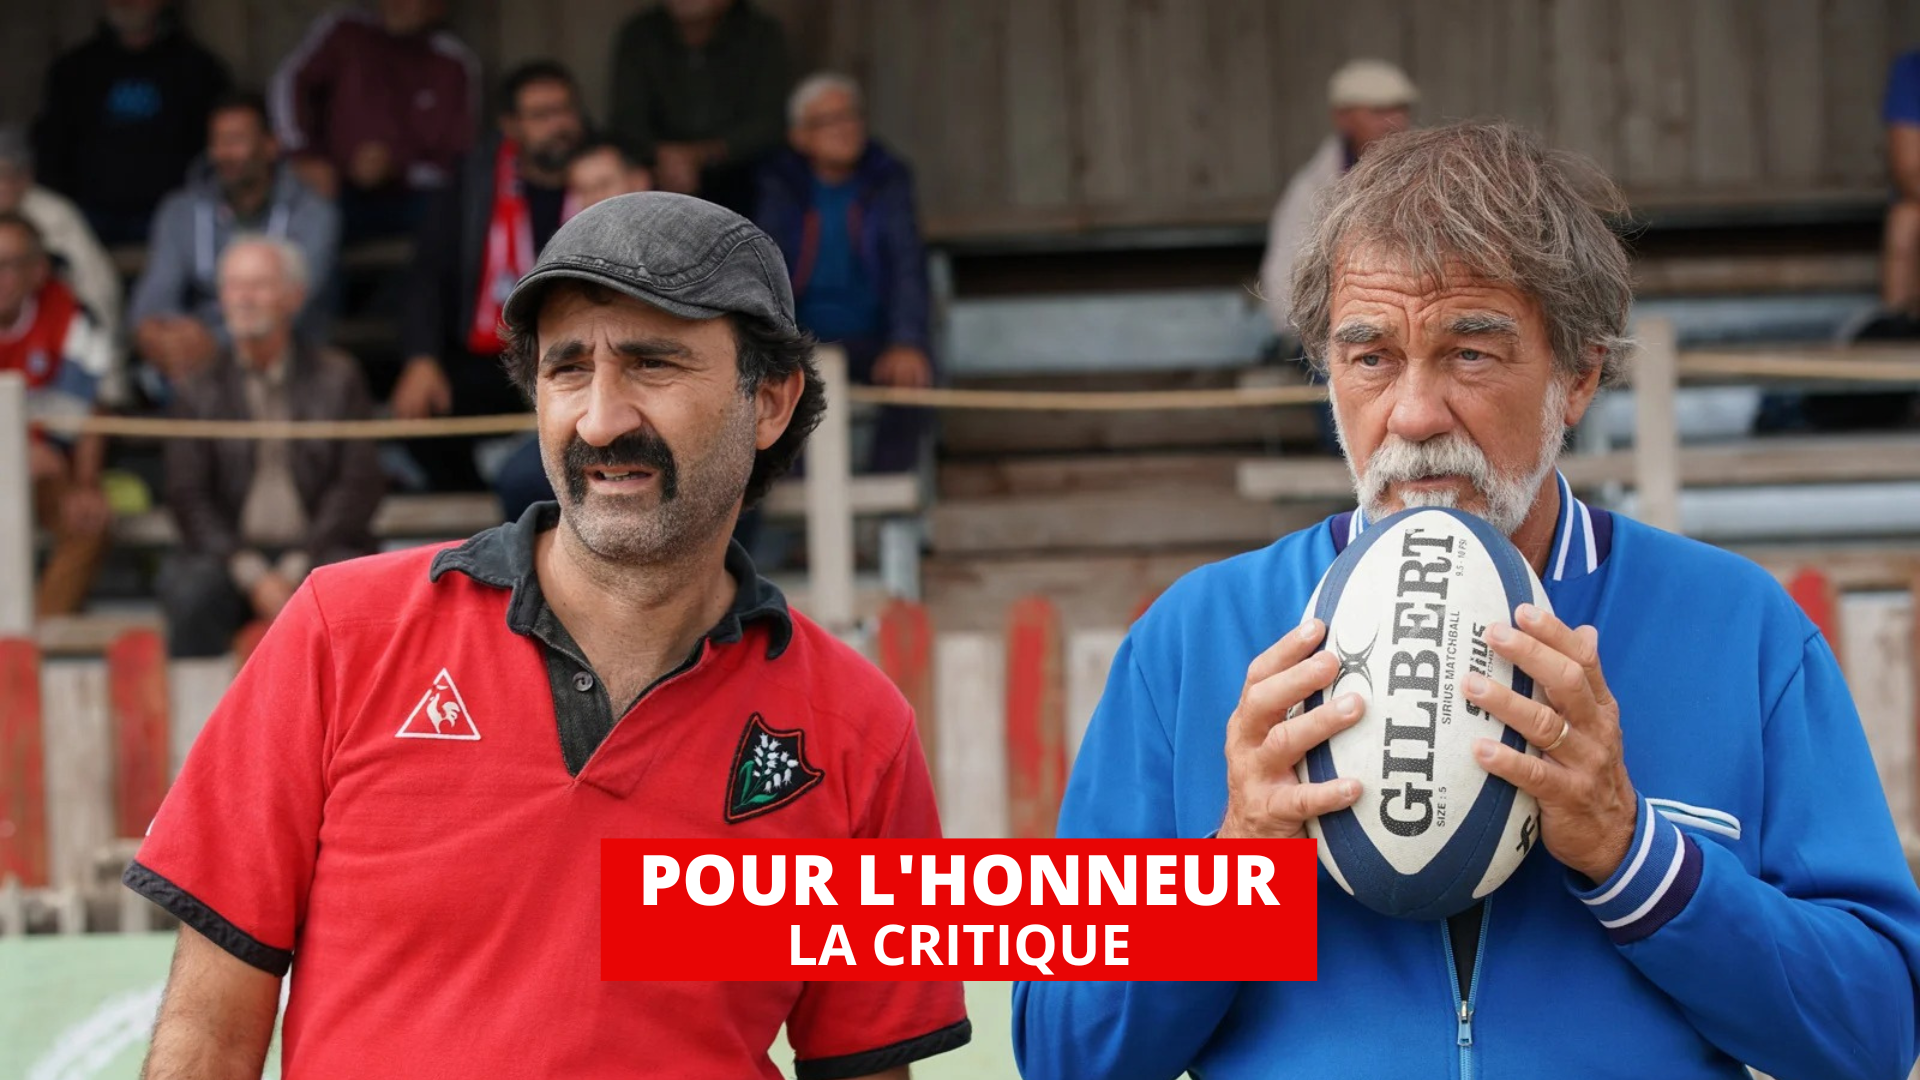 Pour l'honneur : Olivier Marchal exemplaire grâce au rugby